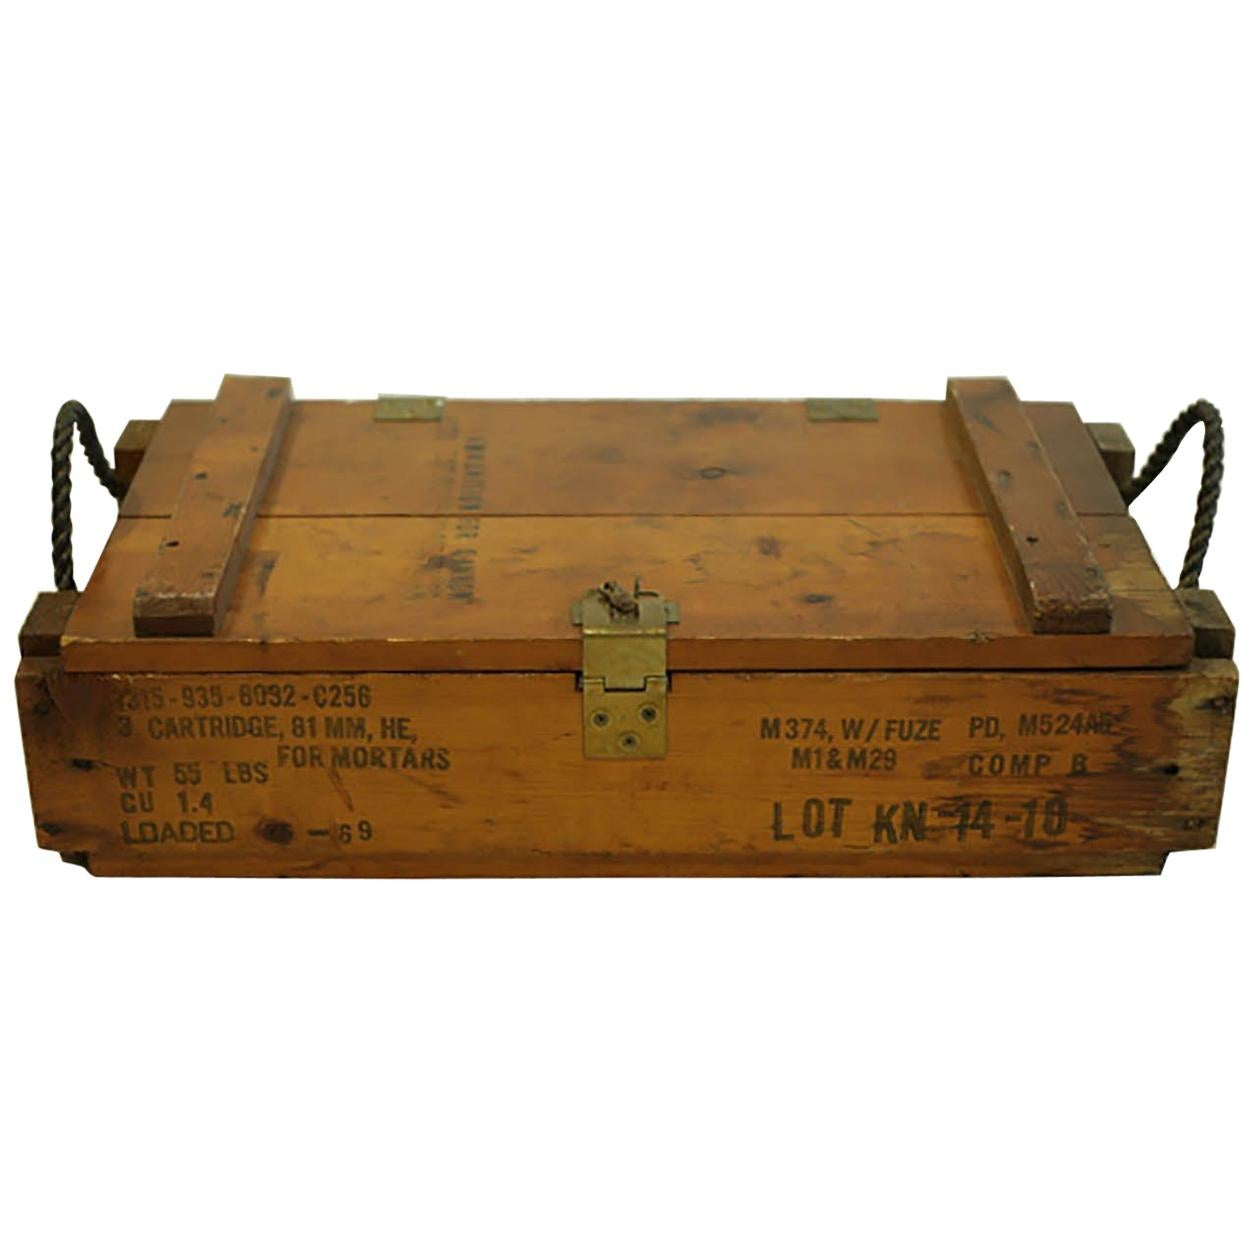 WW11 Wooden Mortar Cartidge Box, circa 1940s